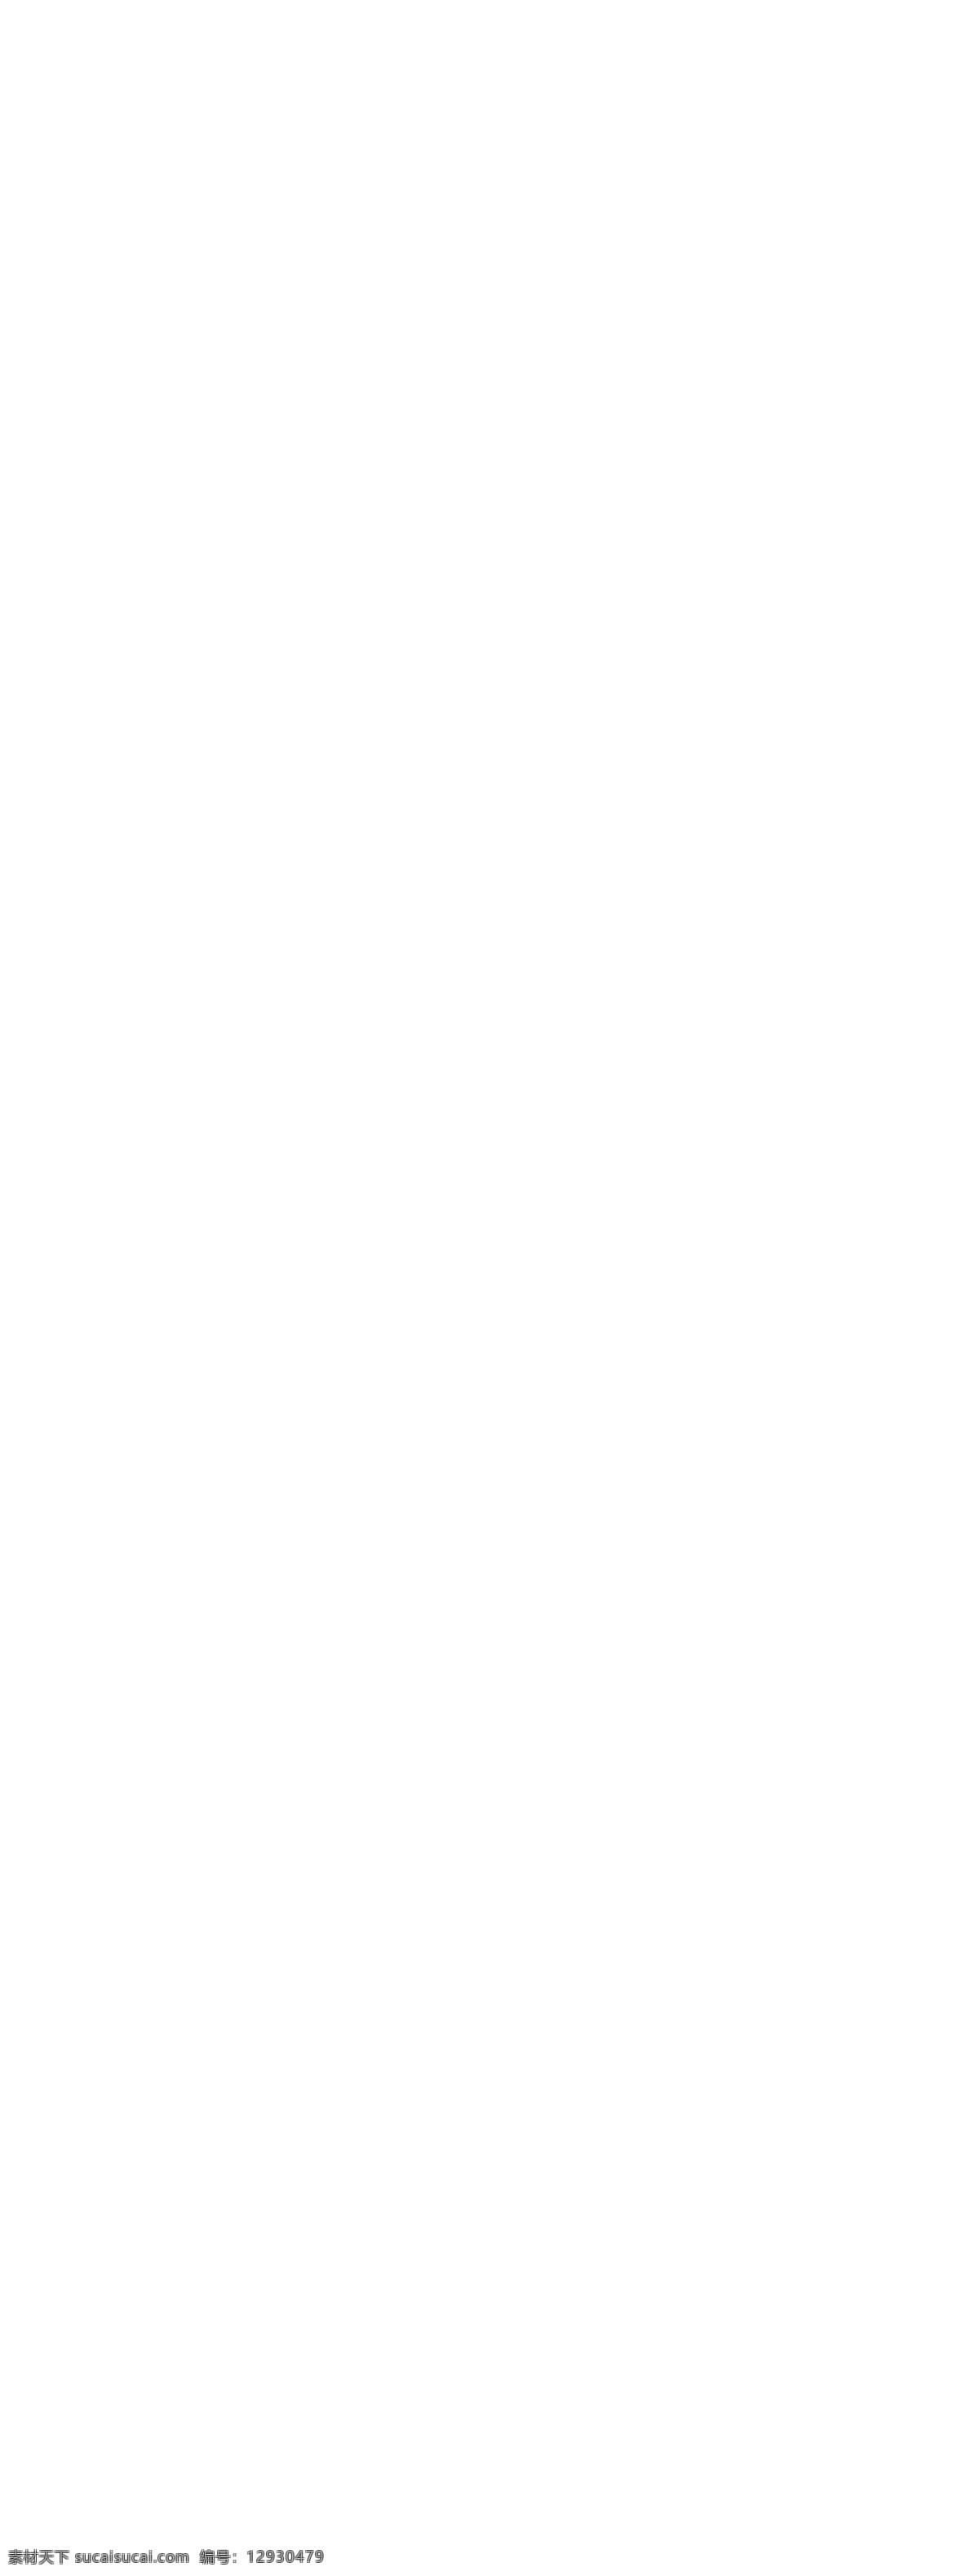 紫色 唯美 中秋 淘宝 手表 店铺 首页 分层 天猫 手表促销 手表海报 中秋手表 淘宝手表 紫色背景 八月中秋特惠 月亮 电子表 机械表